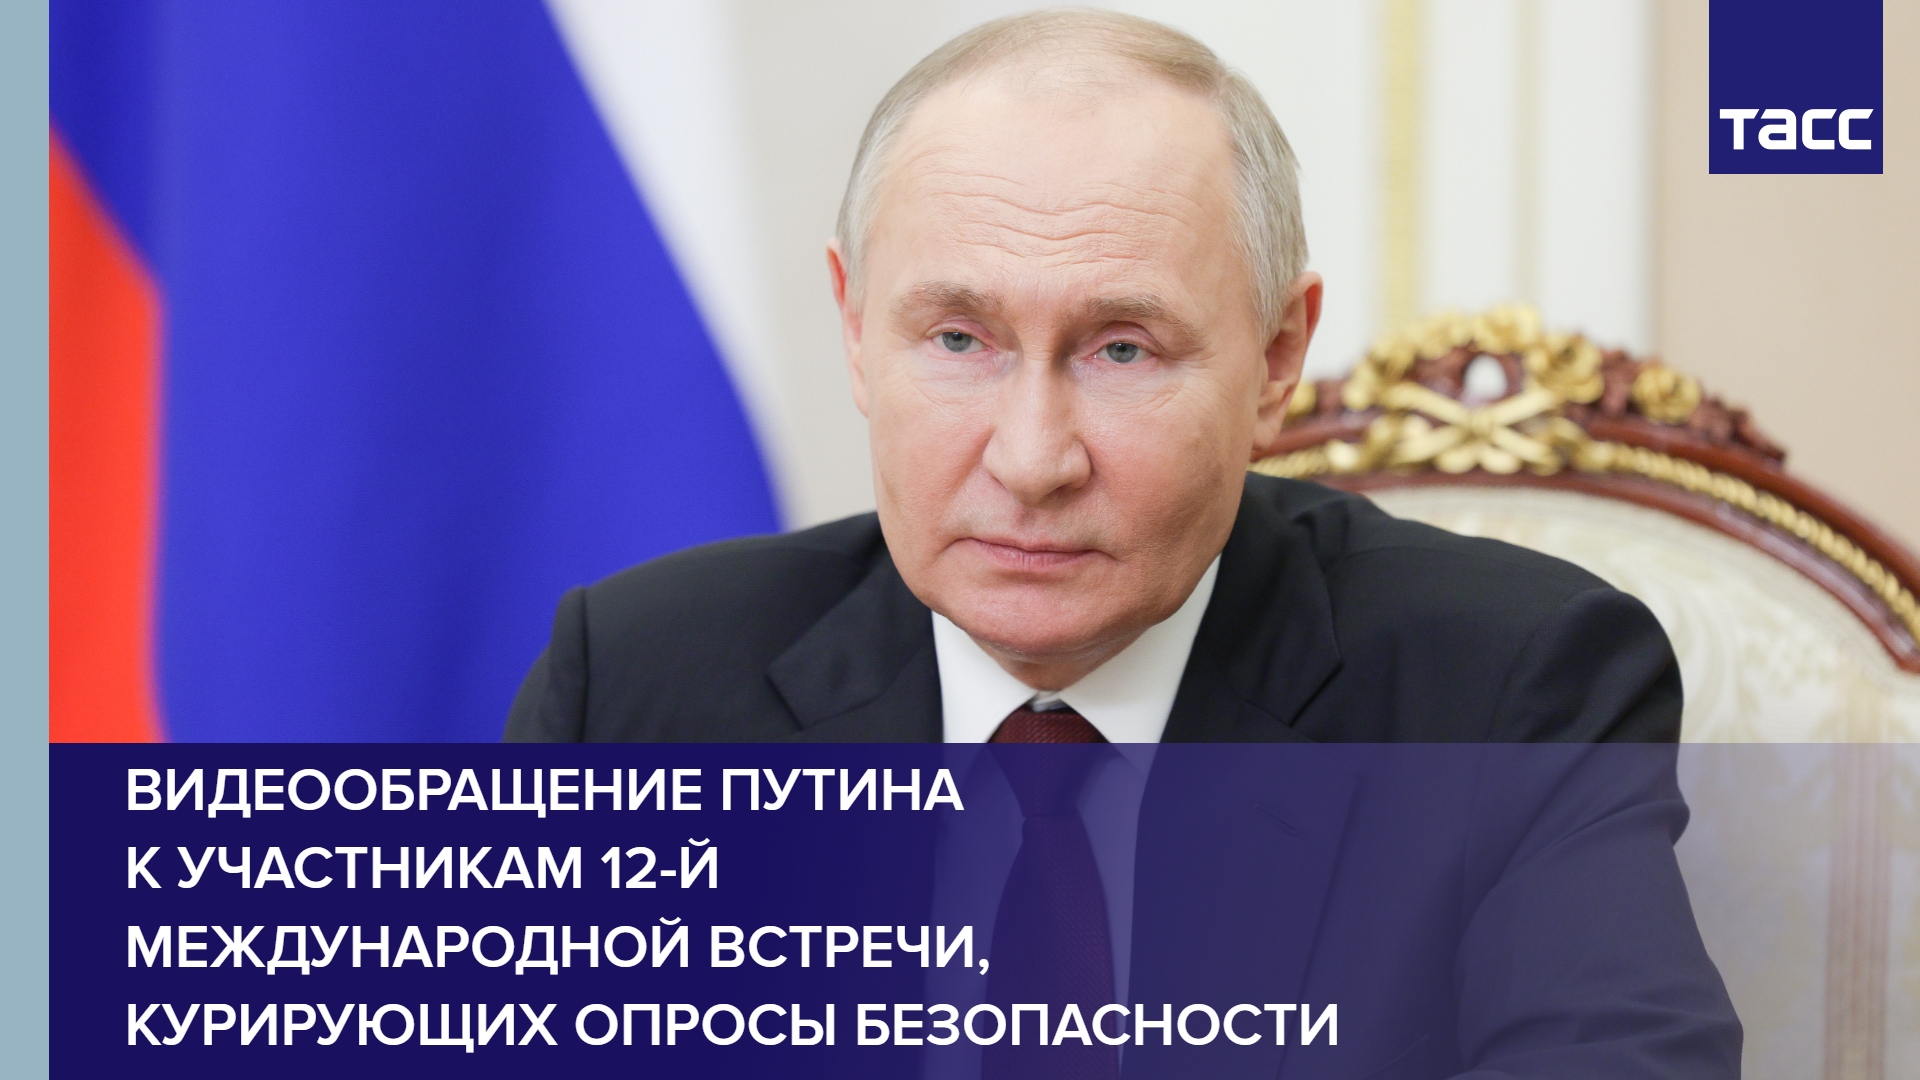 Видеообращение Путина к участникам 12-й Международной встречи, курирующих опросы безопасности